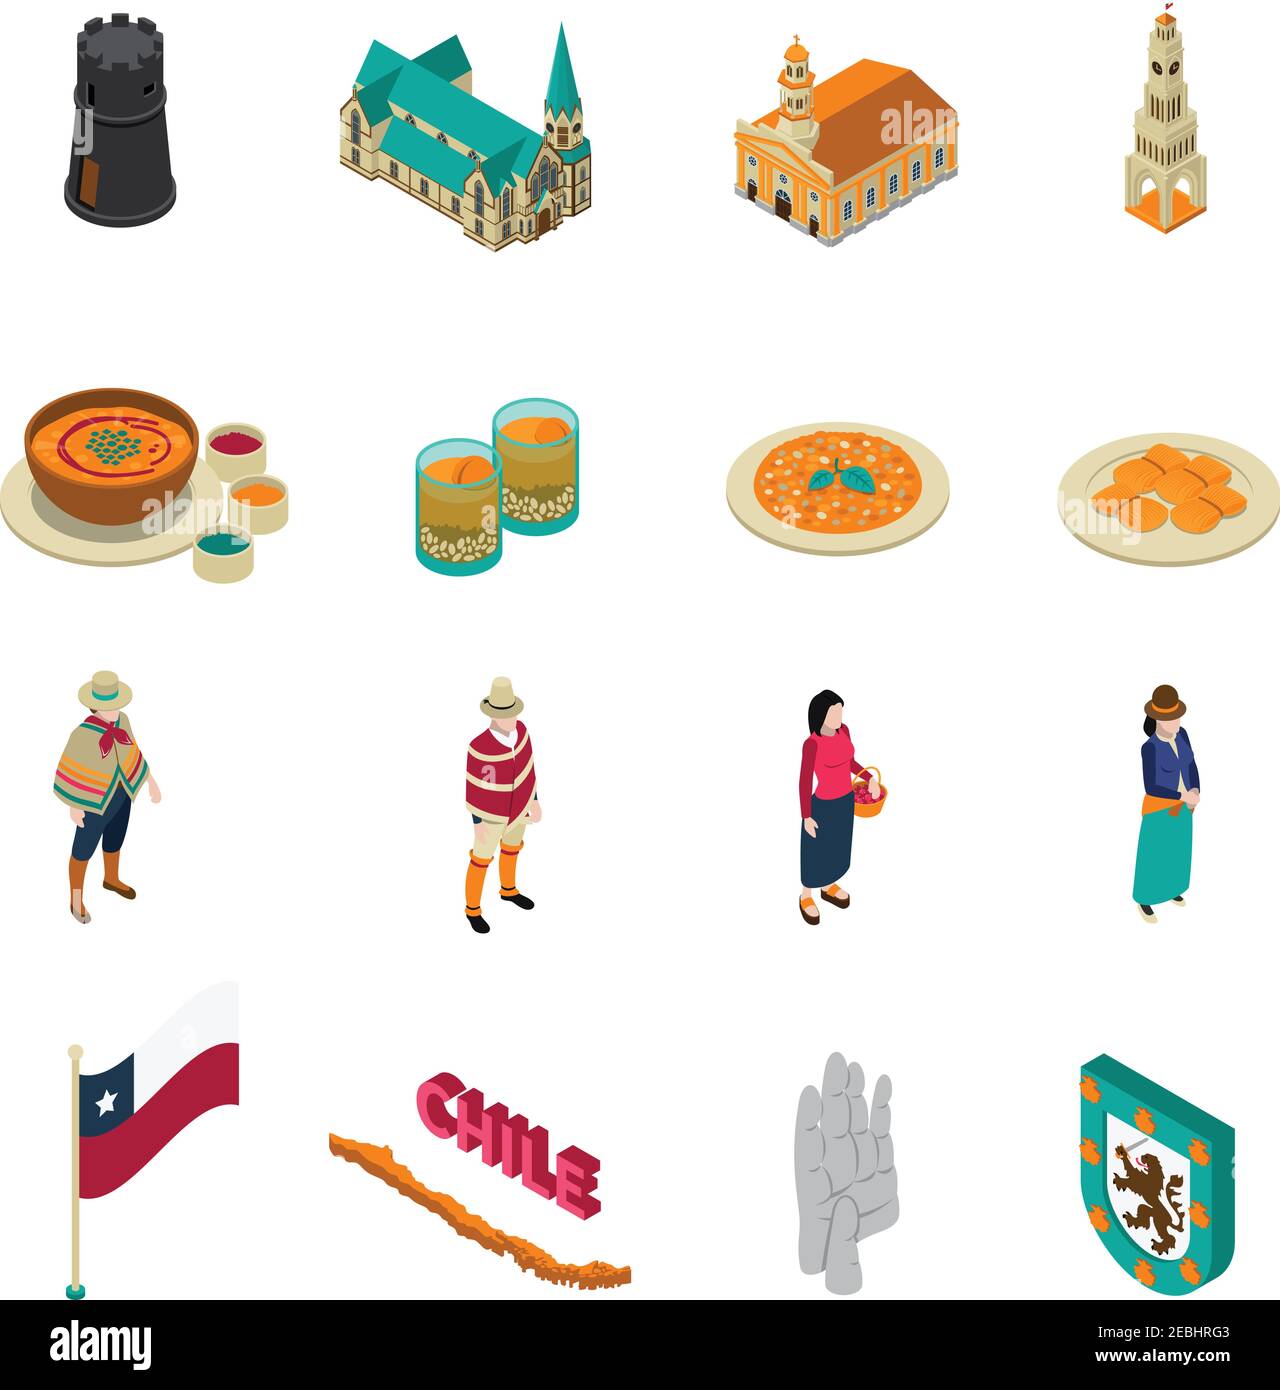 Chile Top touristischen Attraktionen isometrische Ikonen Sammlung mit nationalen geschichteten Kuchenform und Kirchen isoliert Vektor-Illustration Stock Vektor